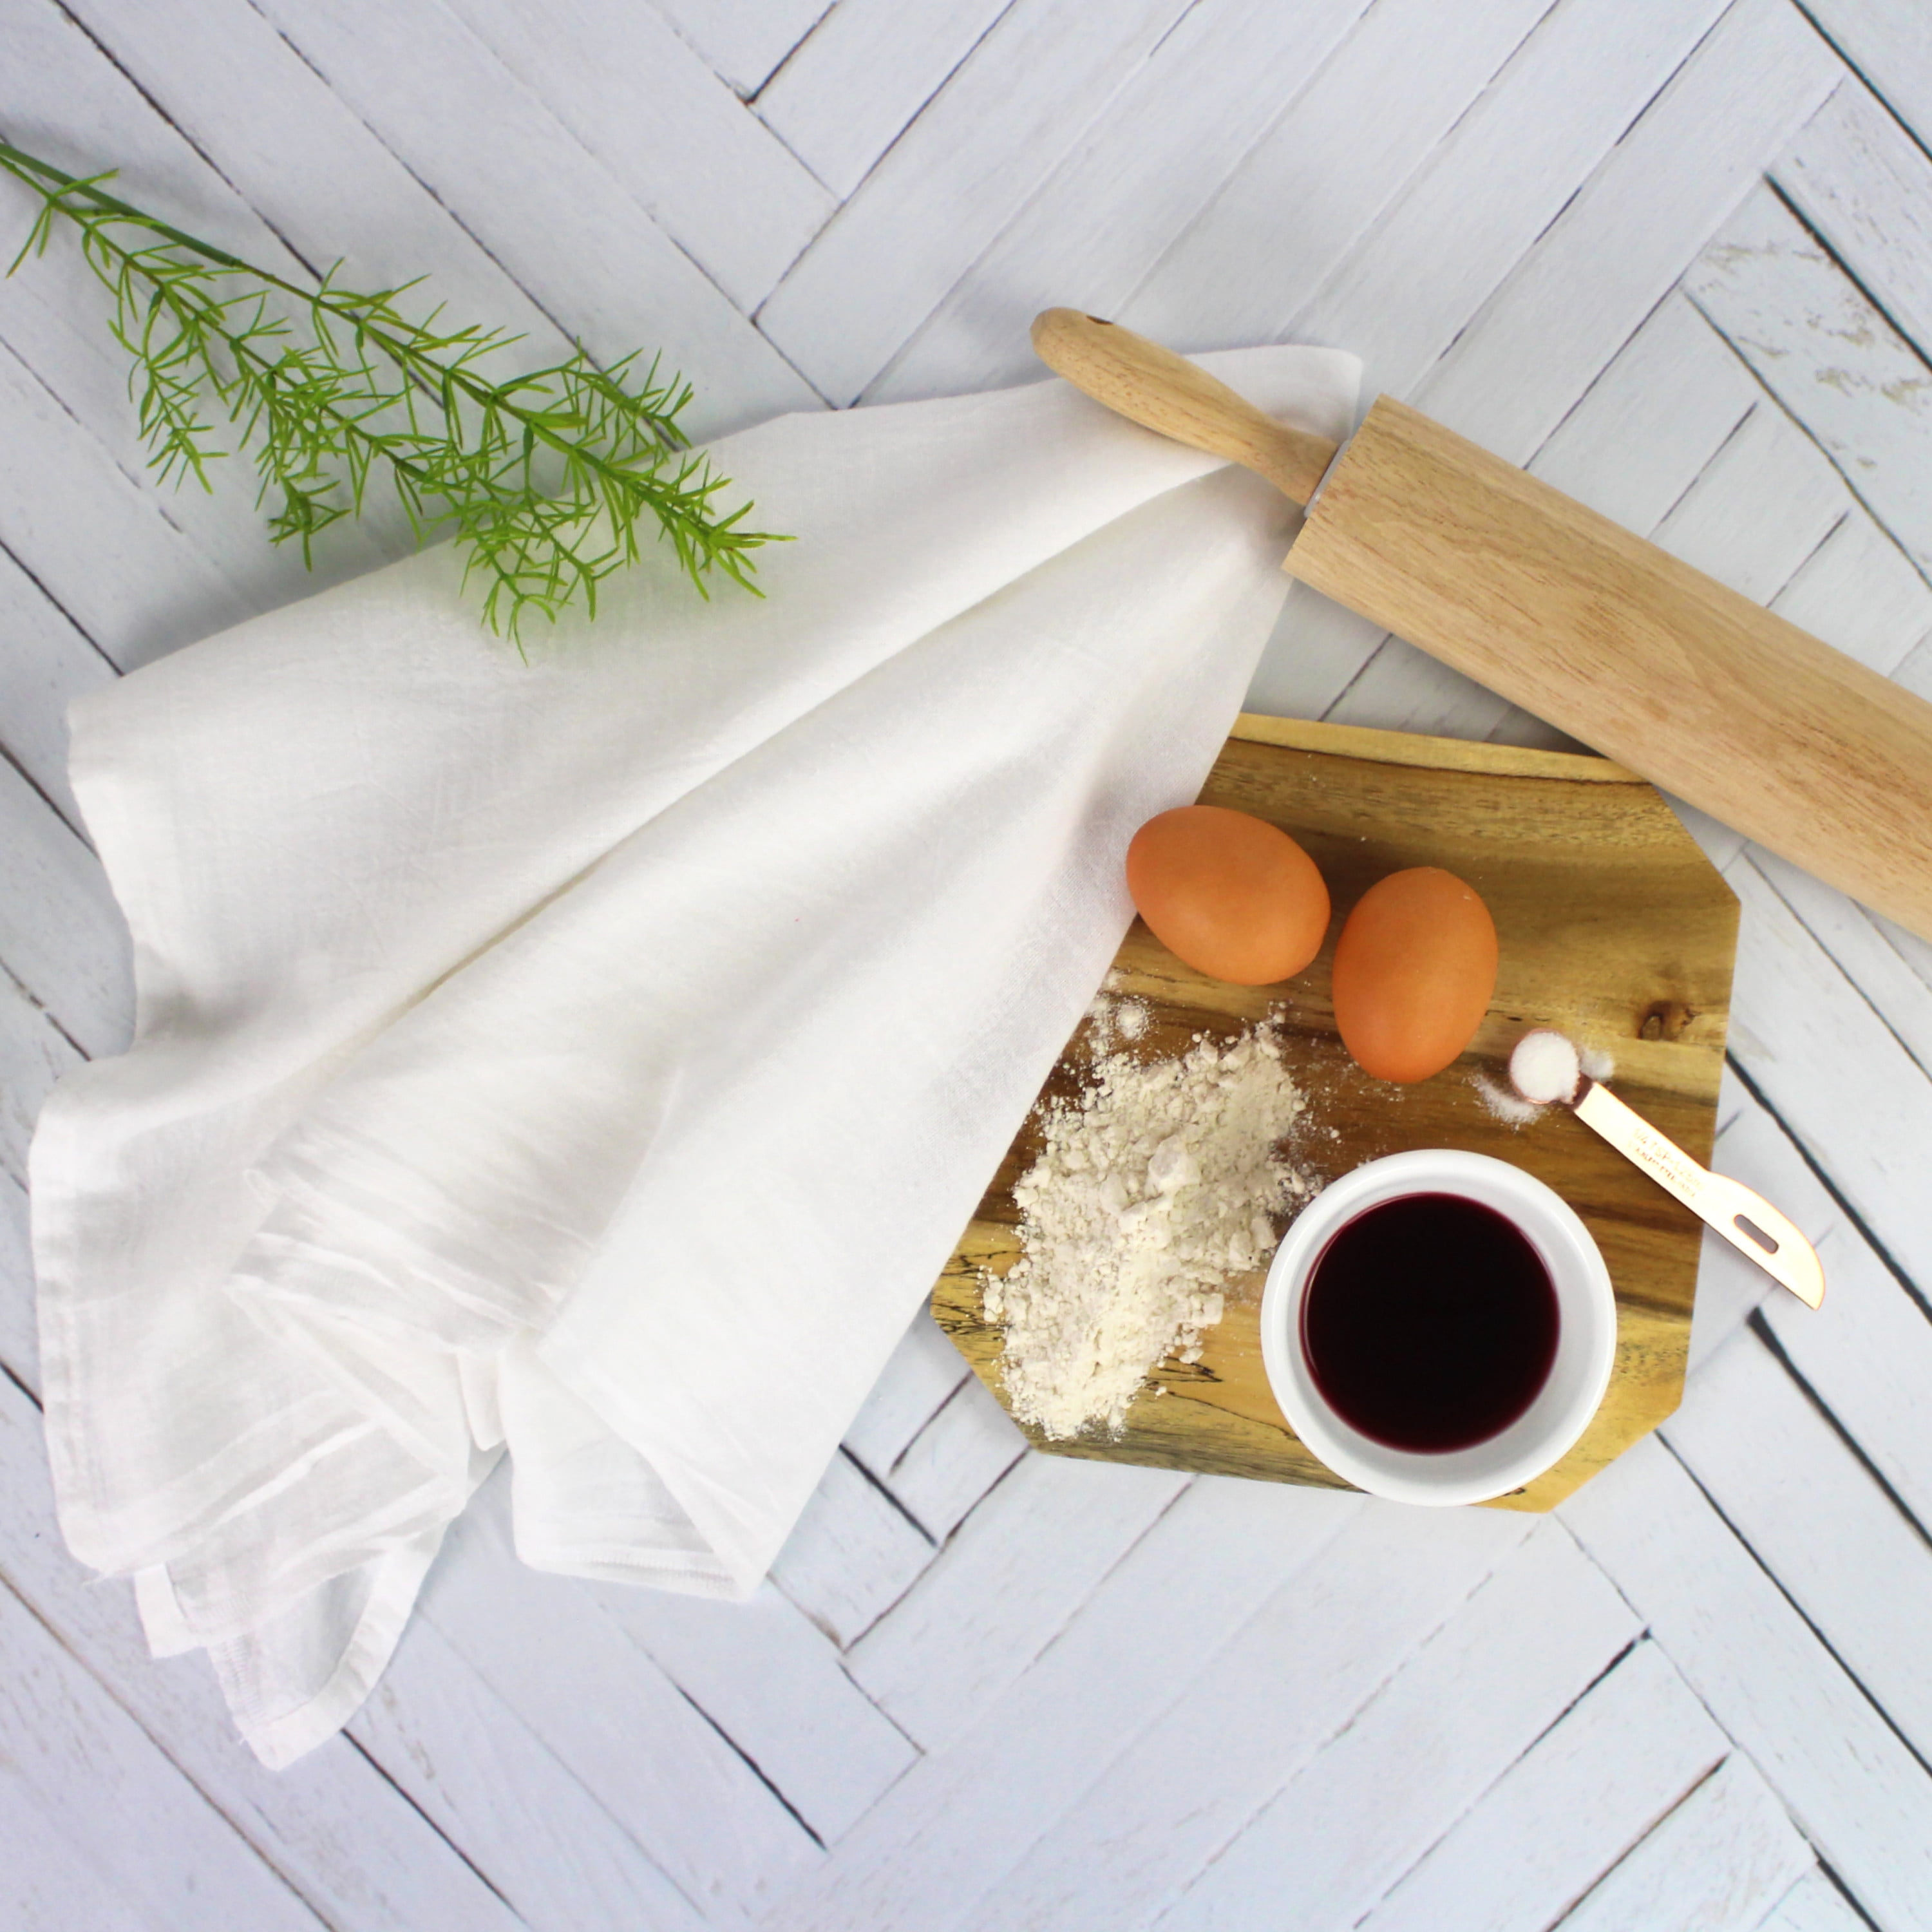 Dish Towels: Tea Towels, Kitchen Cloths & Flour Sack Towels